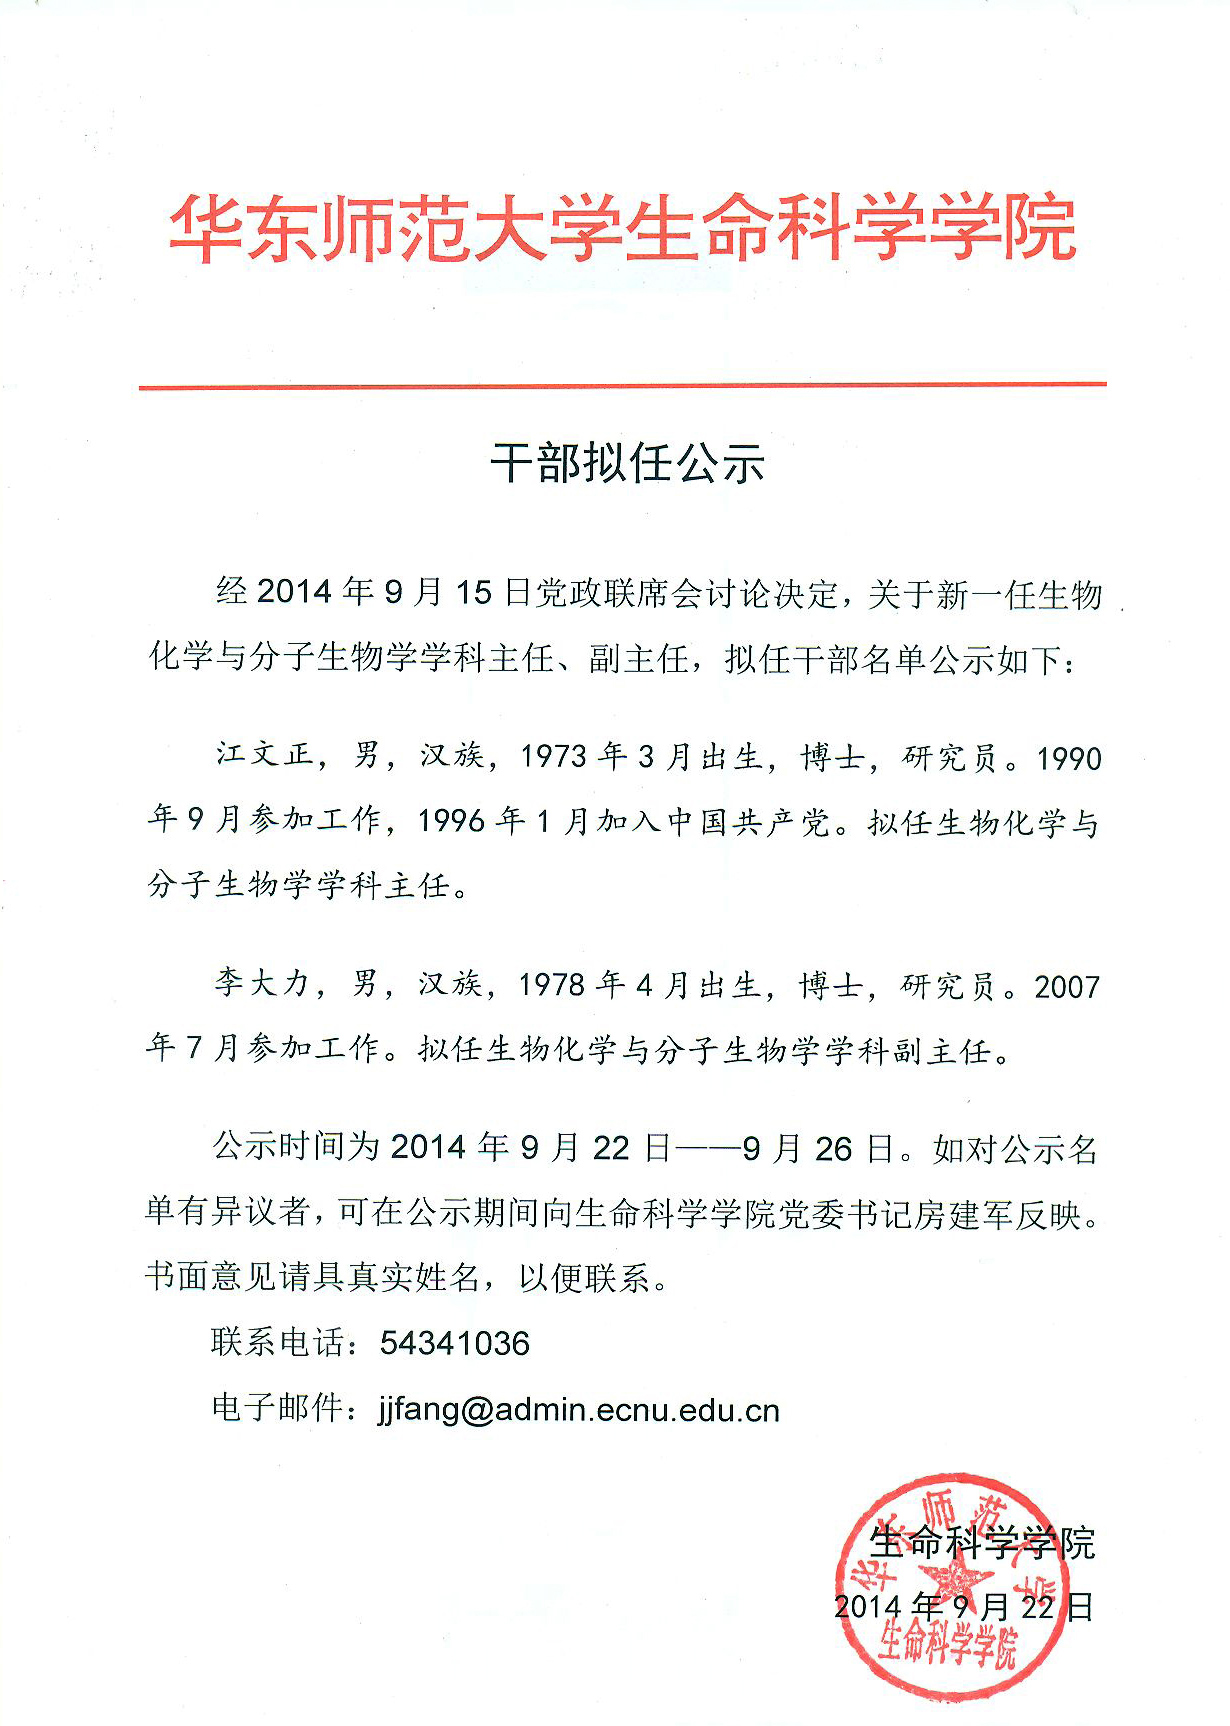 龙华建设下属市场公司召开干部任命会议 - 深圳市龙华建设发展集团有限公司